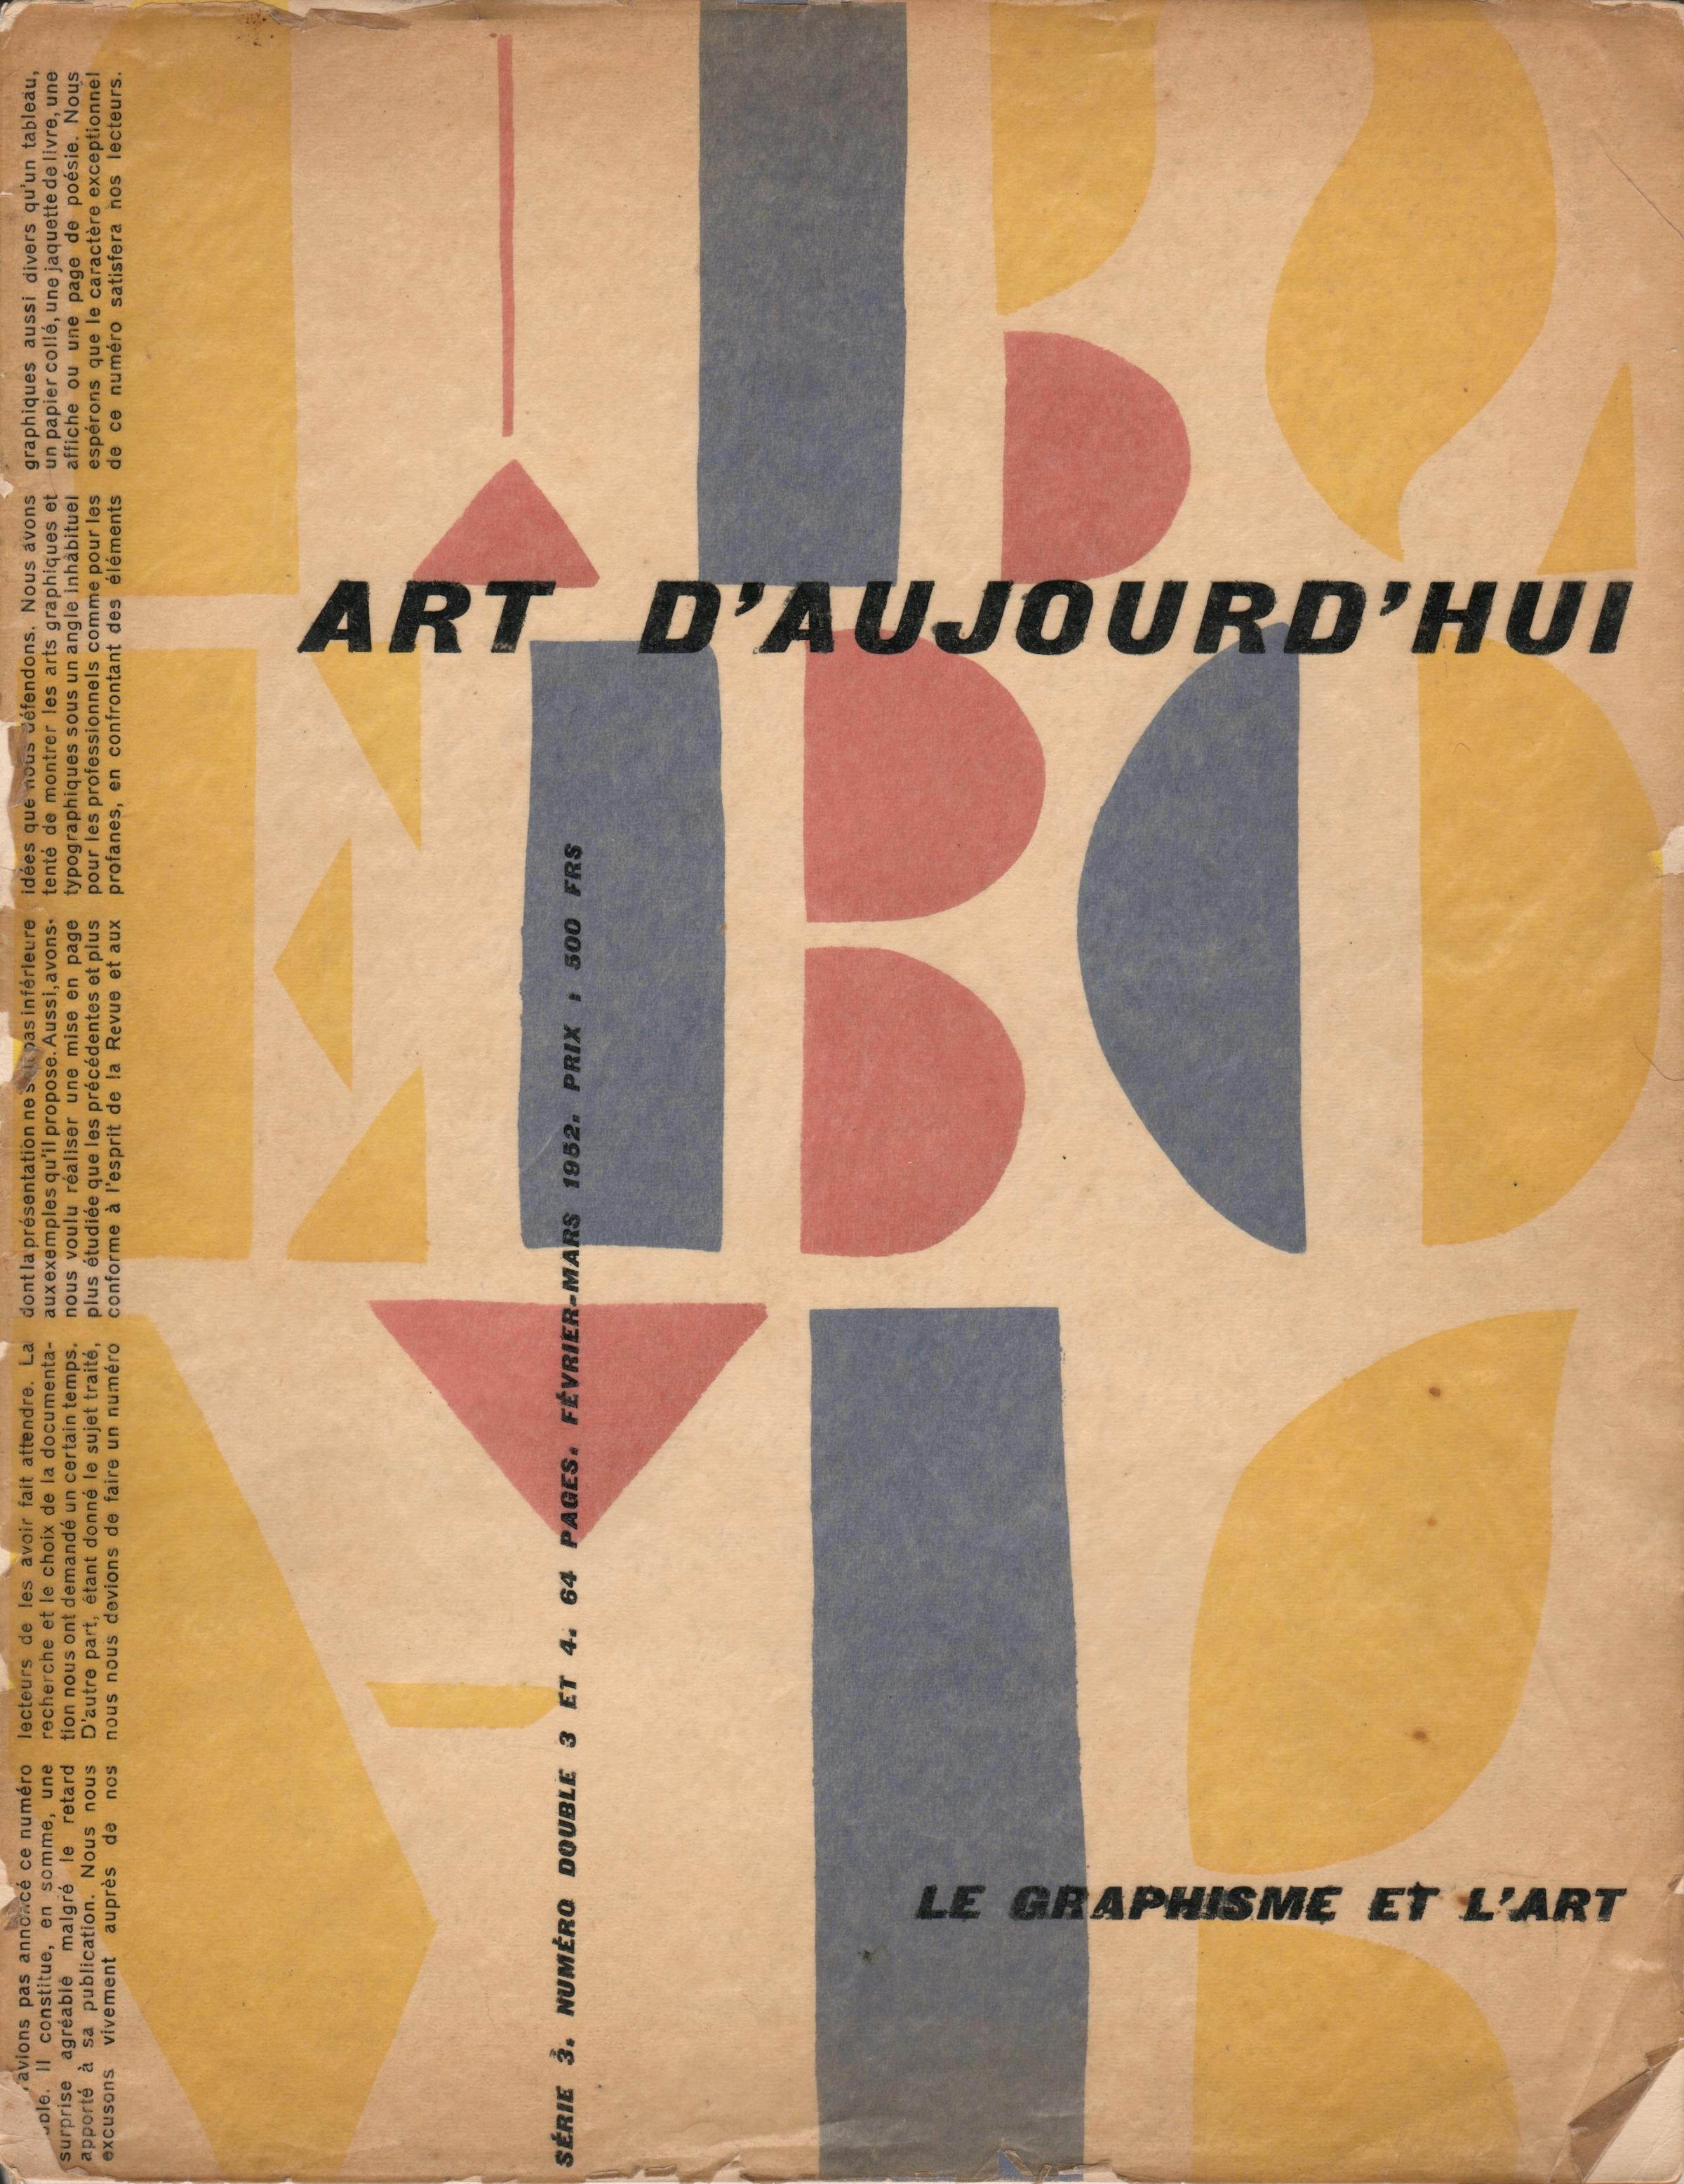 Art d’aujourd'hui: “Le graphisme et l’art”, 1952.